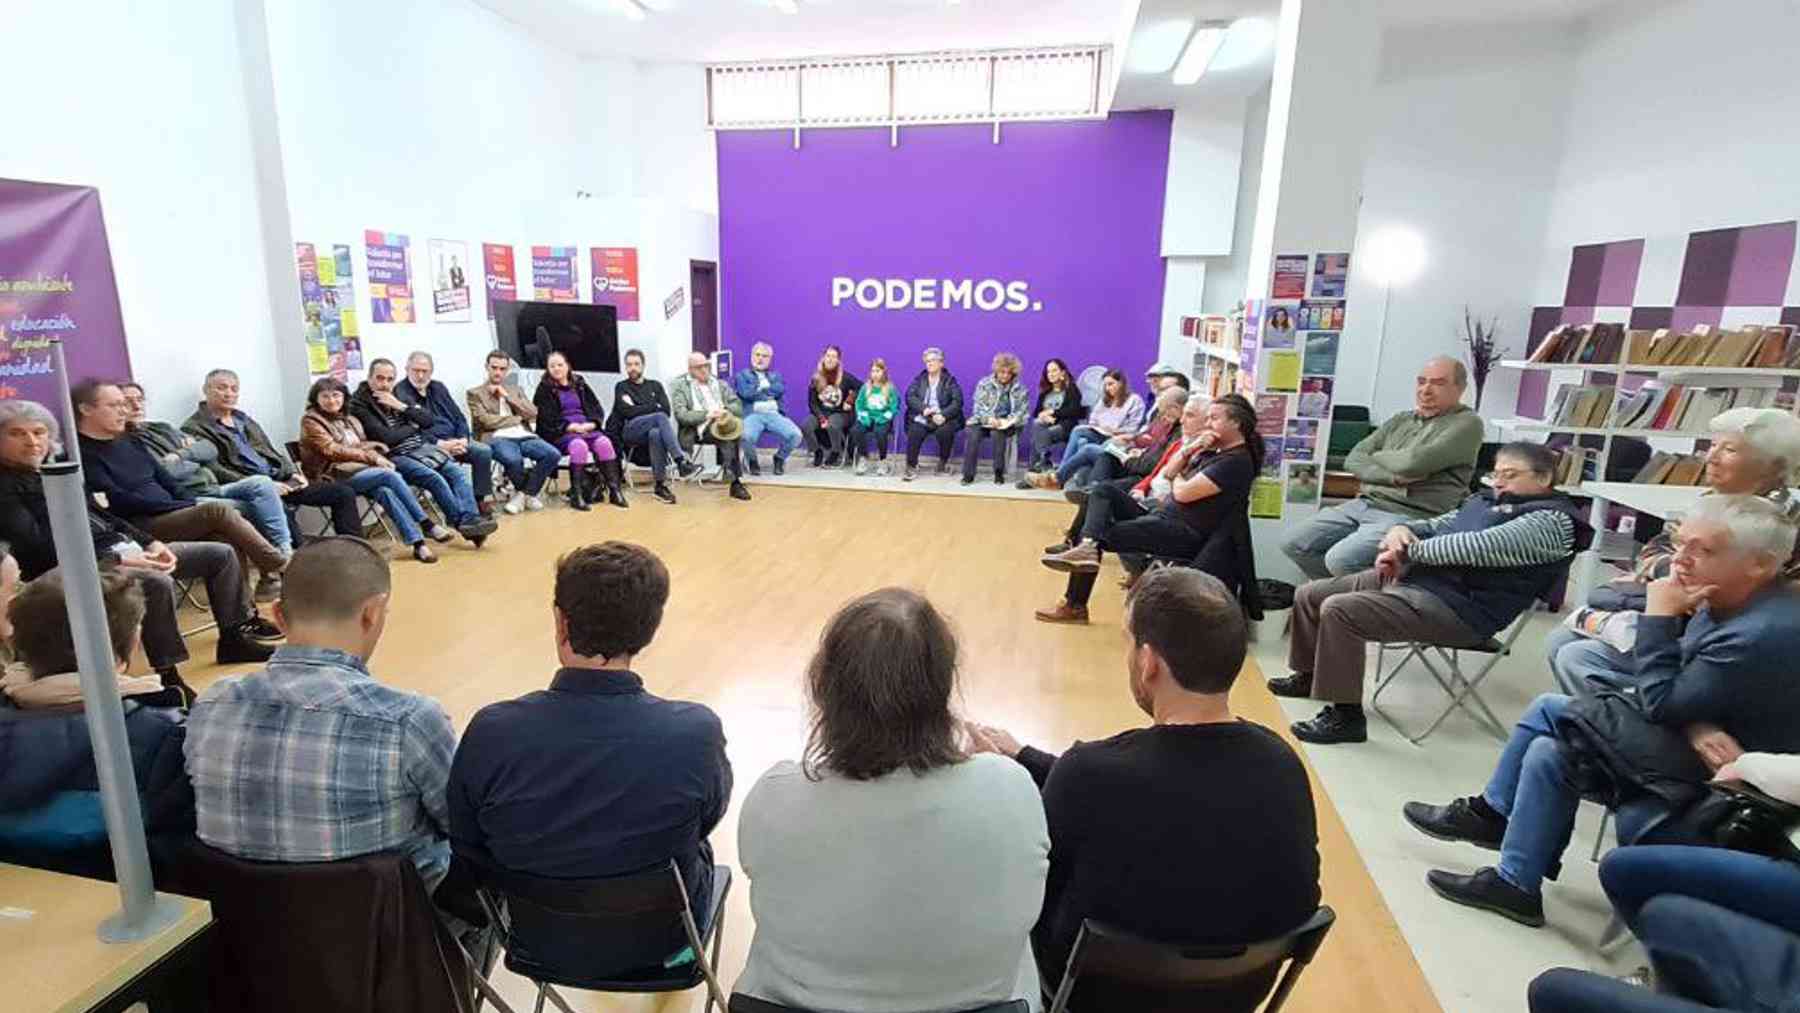 Imagen del encuentro de Podemos en Palma celebrado este sábado.